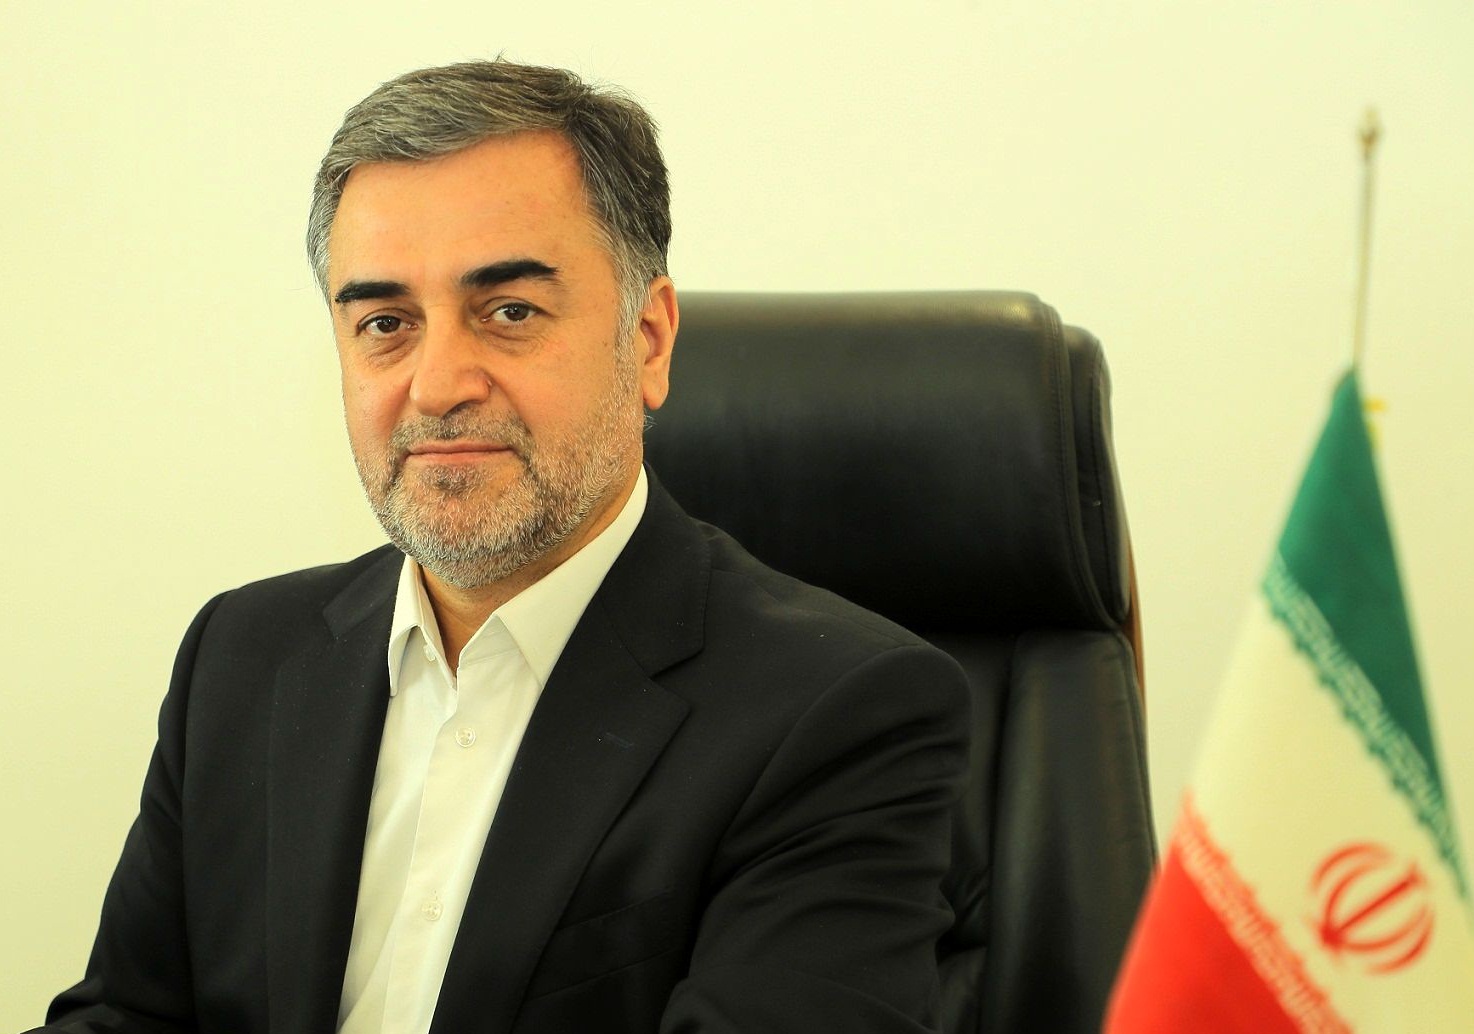 سید محمود حسینی پور؛ رئیس دبیرخانه ستاد هماهنگی مبارزه با مفاسد اقتصادی شد